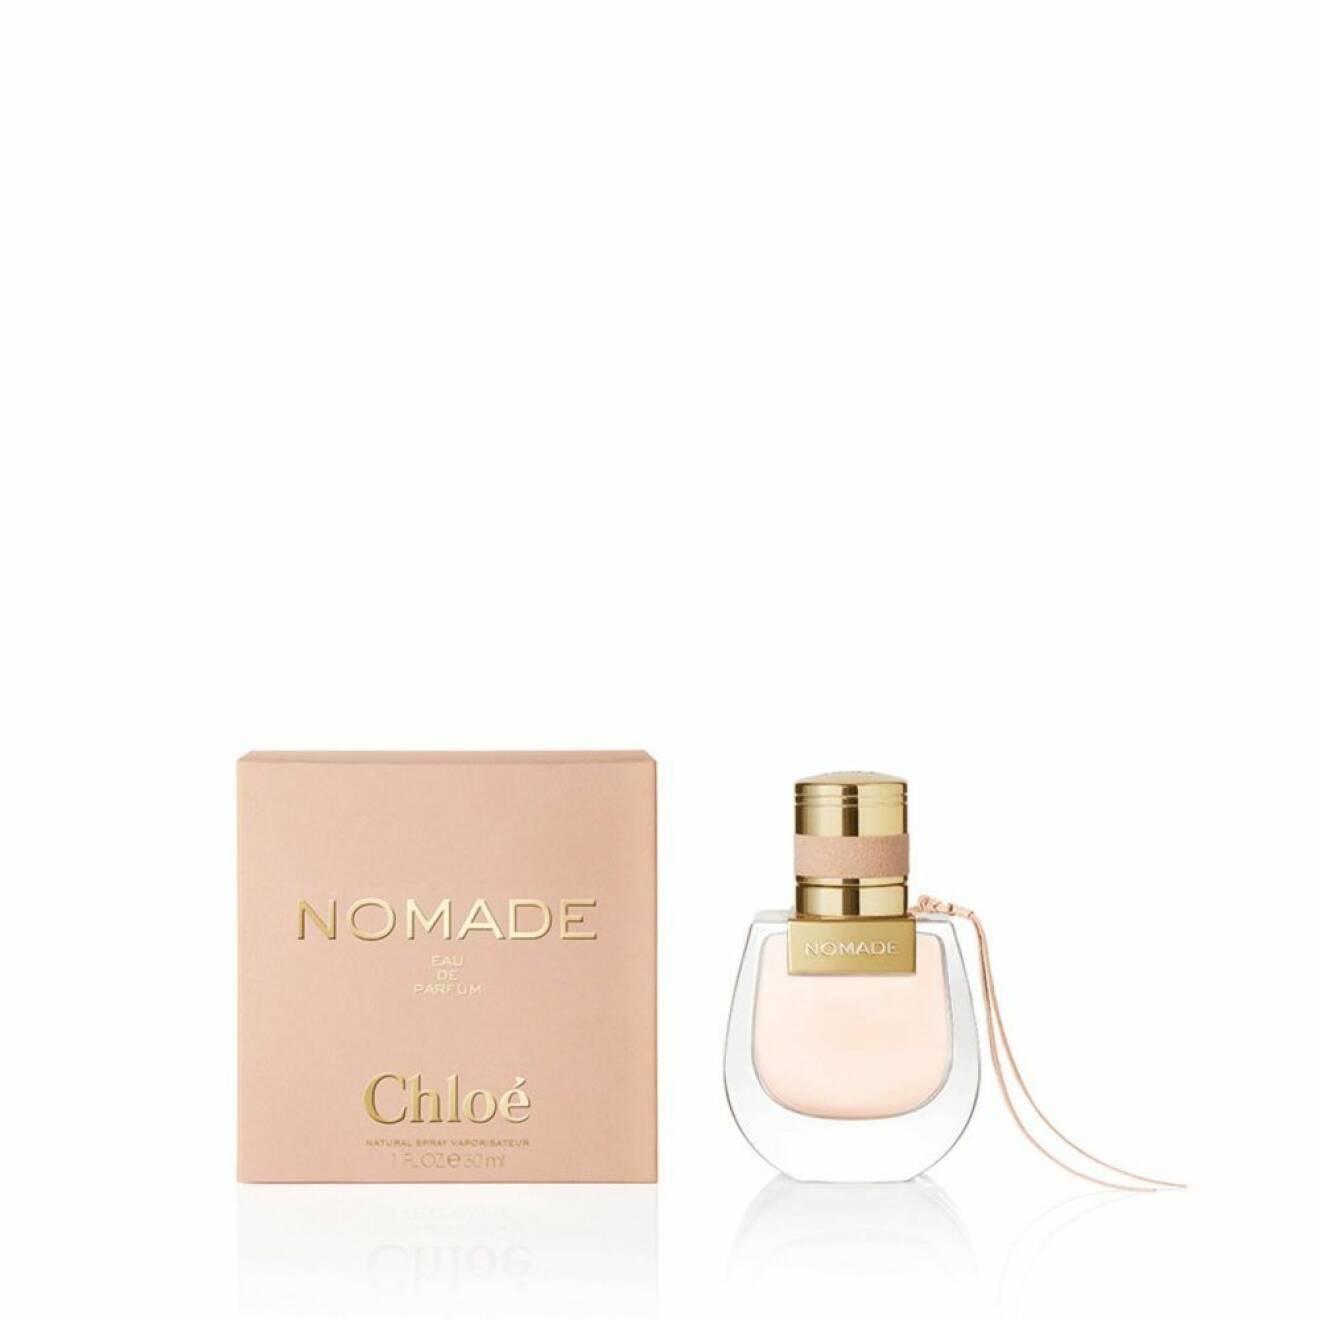 Årets nykomling från Chloé är parfymen Nomade som är en drömsk brygd som hyllar livet och friheten.